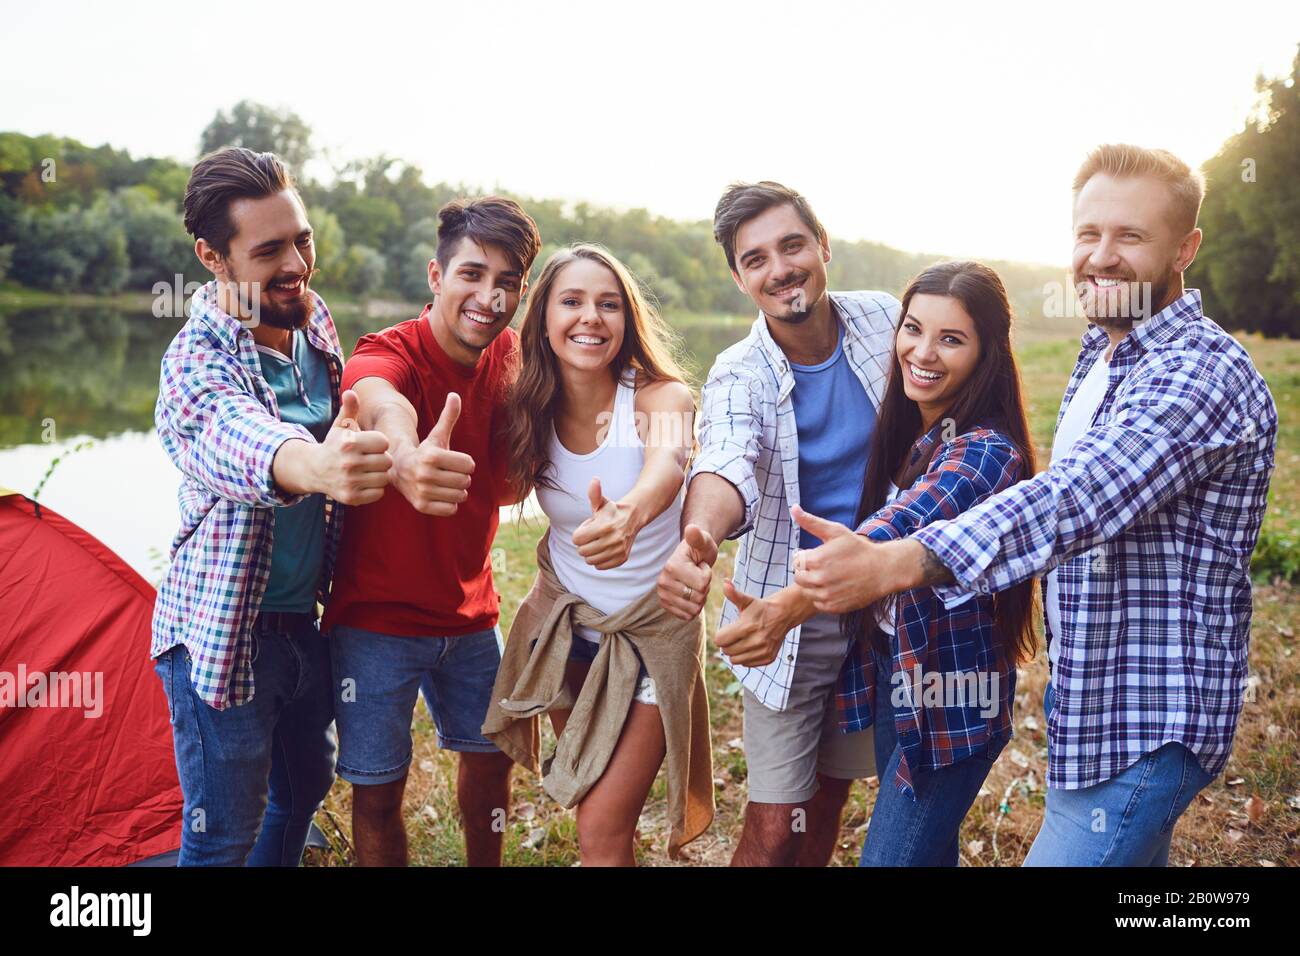 Gruppe von Menschen Lächeln, stehend auf einem Picknick Stockfoto